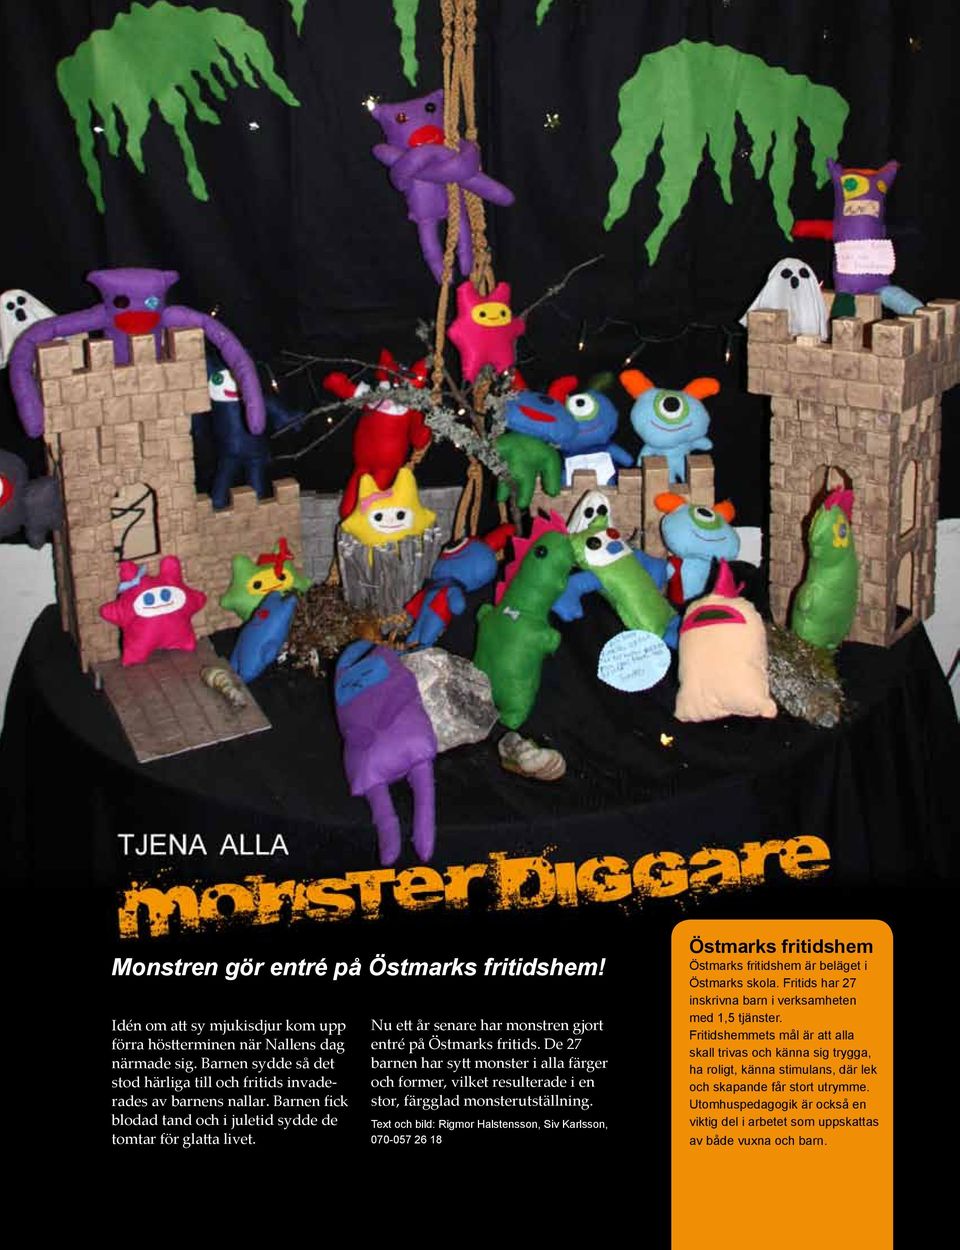 Nu ett år senare har monstren gjort entré på Östmarks fritids. De 27 barnen har sytt monster i alla färger och former, vilket resulterade i en stor, färgglad monsterutställning.